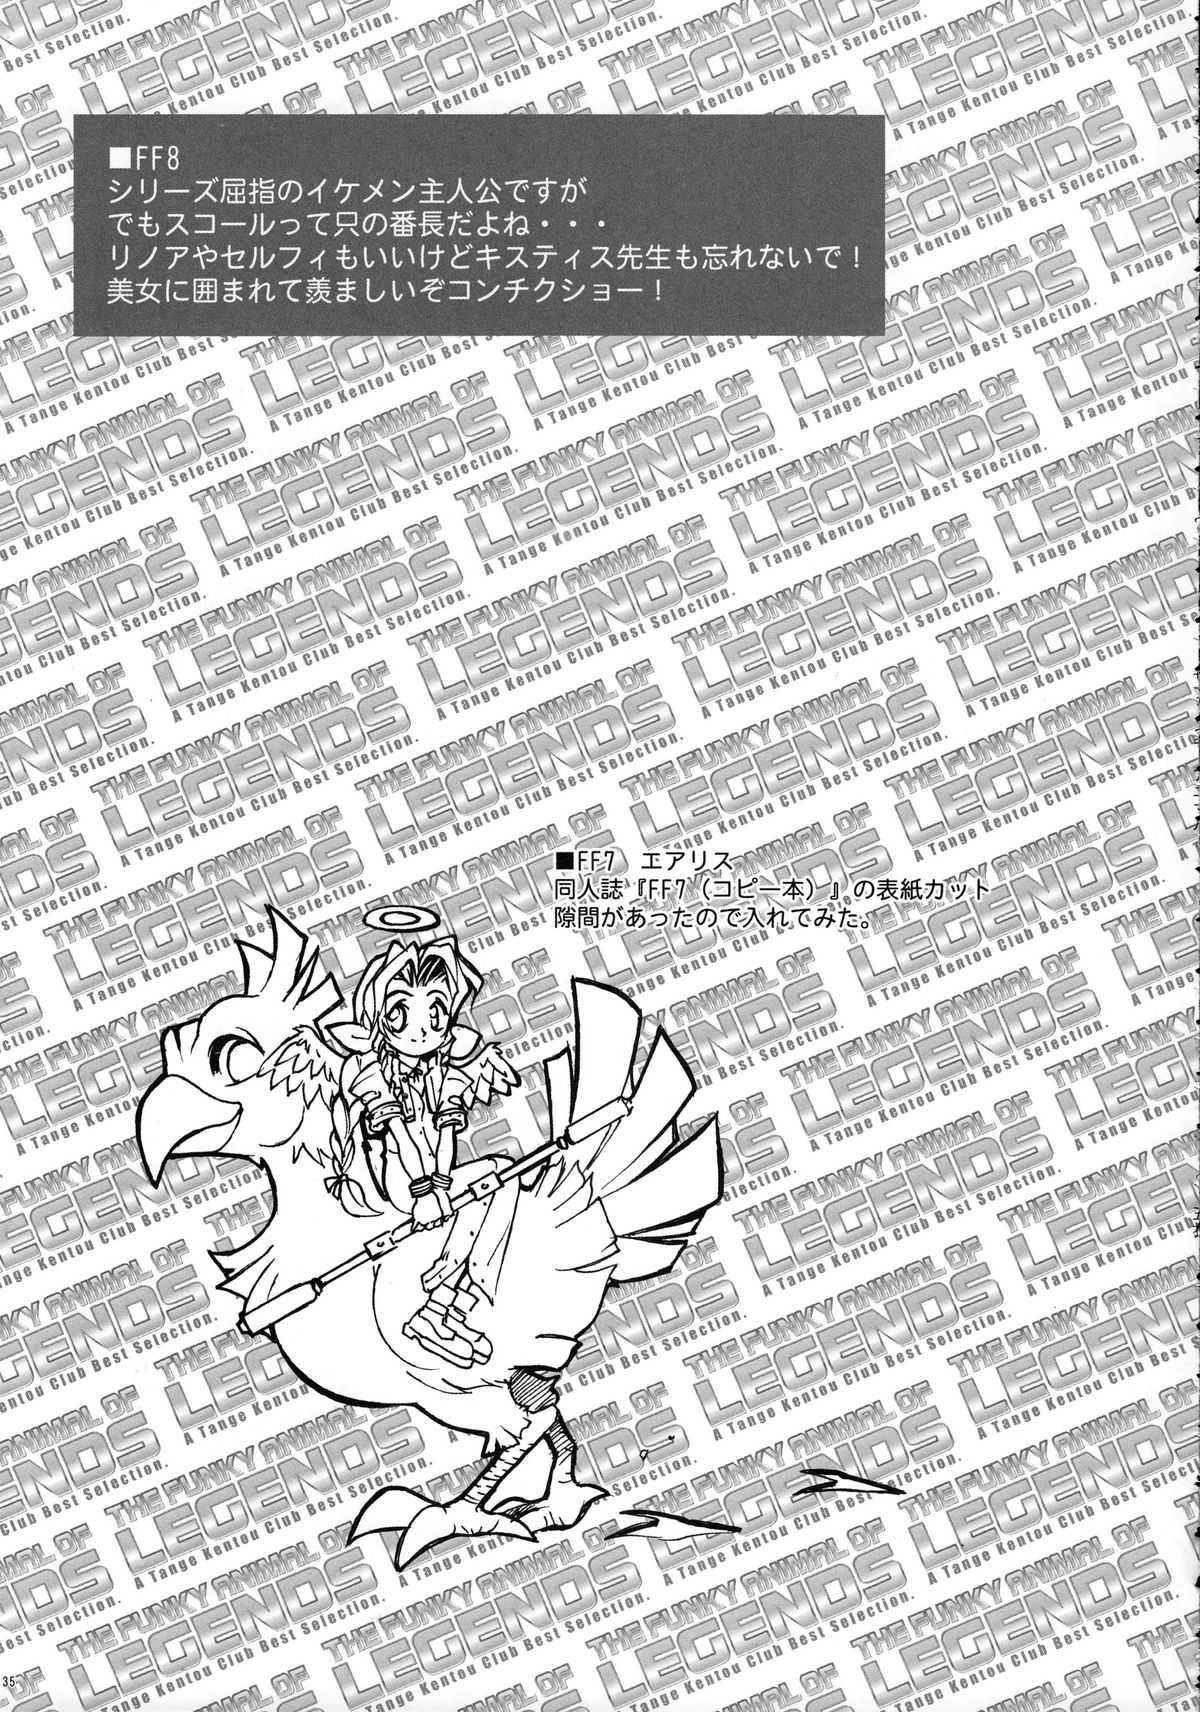 [Tange Kentou Club] Funky Animal Legend 02 Red Side (Final Fantasy) [丹下拳闘倶楽部] Funky Animal Legend 02 Red Side (ファイナルファンタジー)